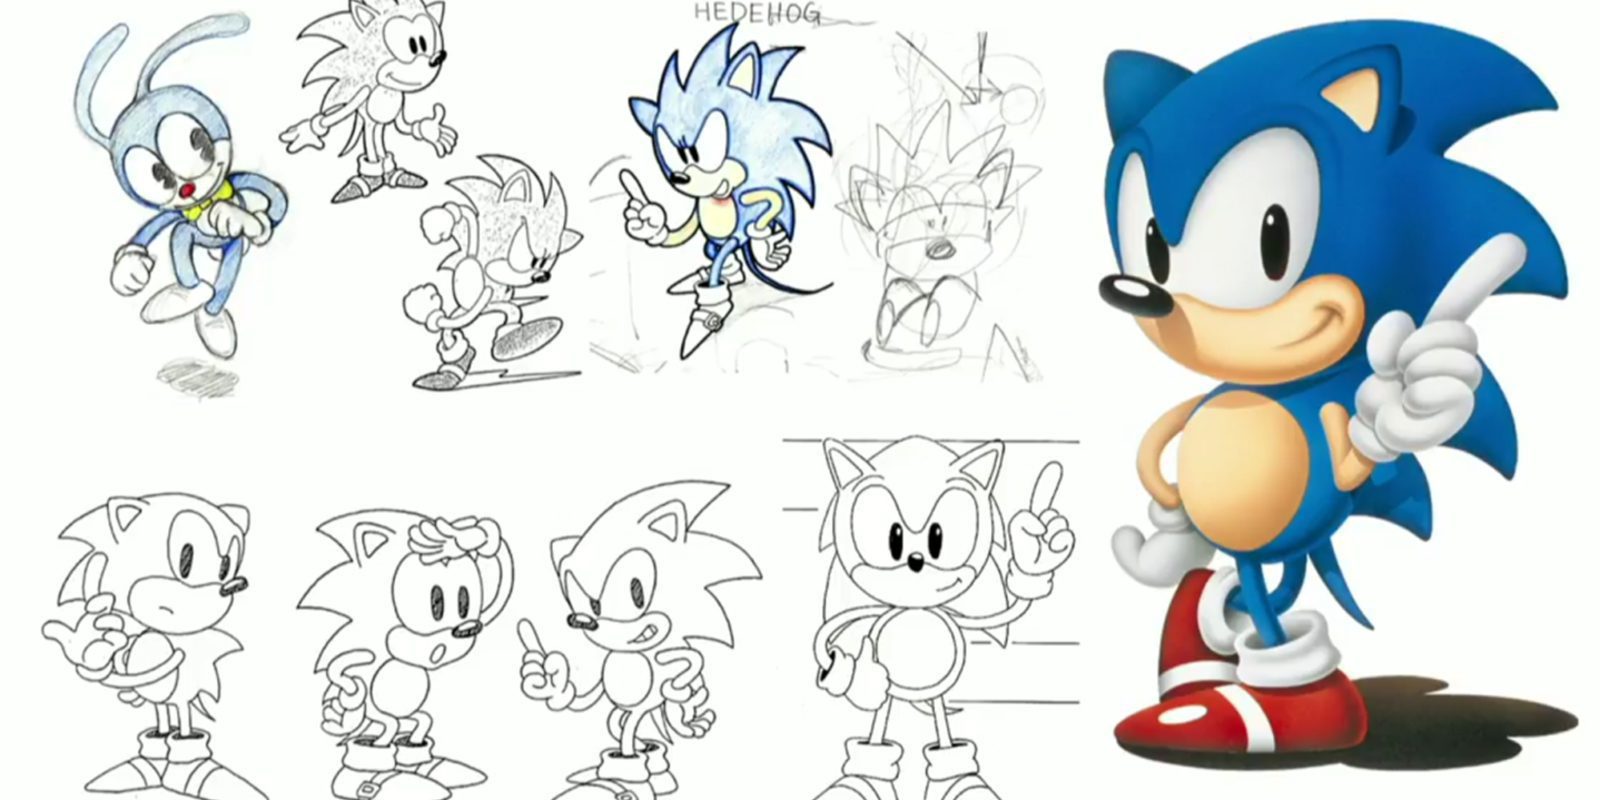 SEGA confirma que el nuevo juego de 'Sonic' llegará en 2017